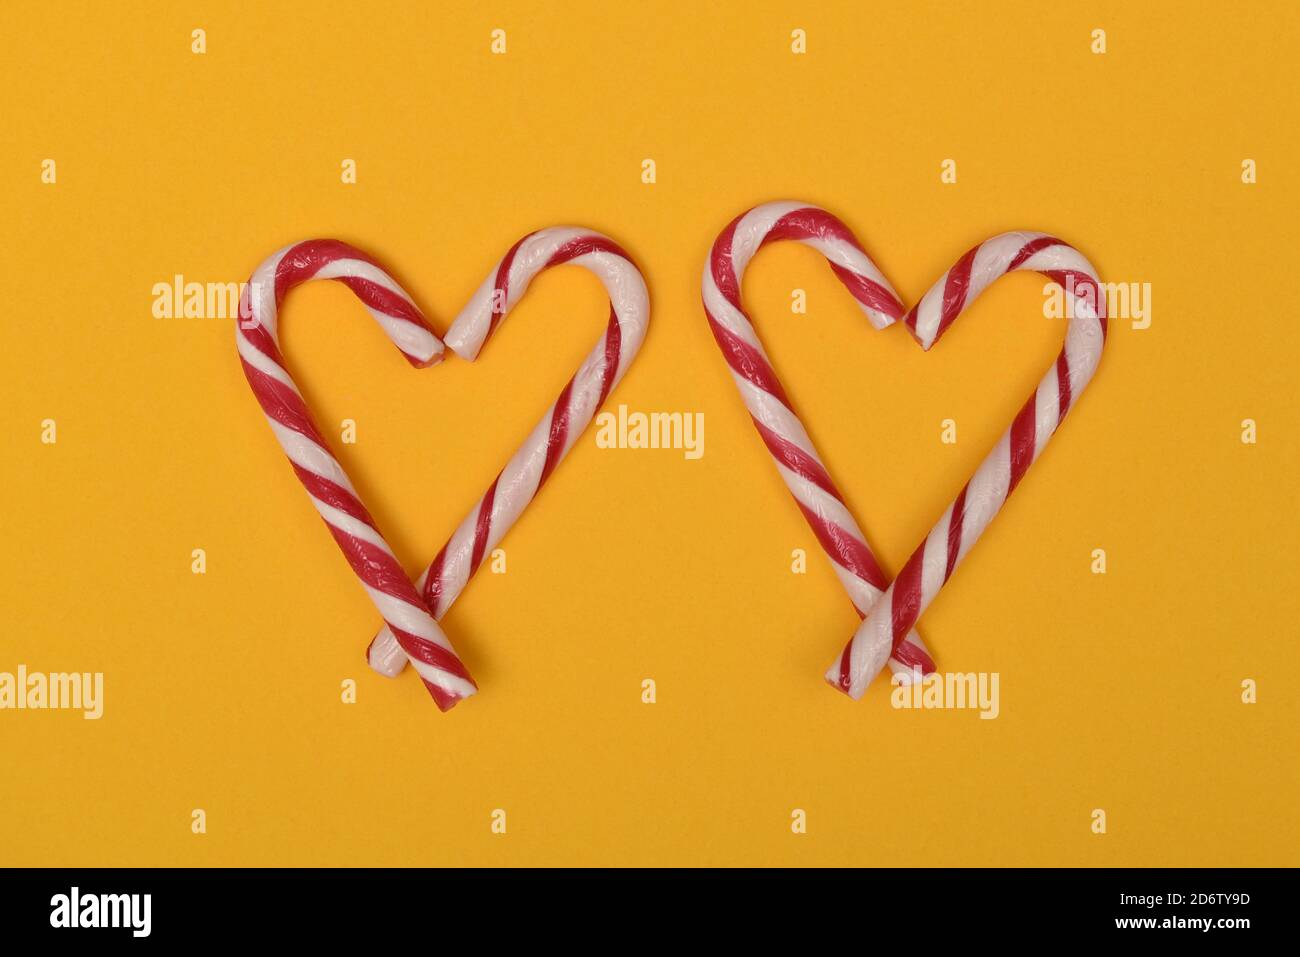 fotografía de dos bastones de caramelo en forma de corazón en un fondo rojo Foto de stock